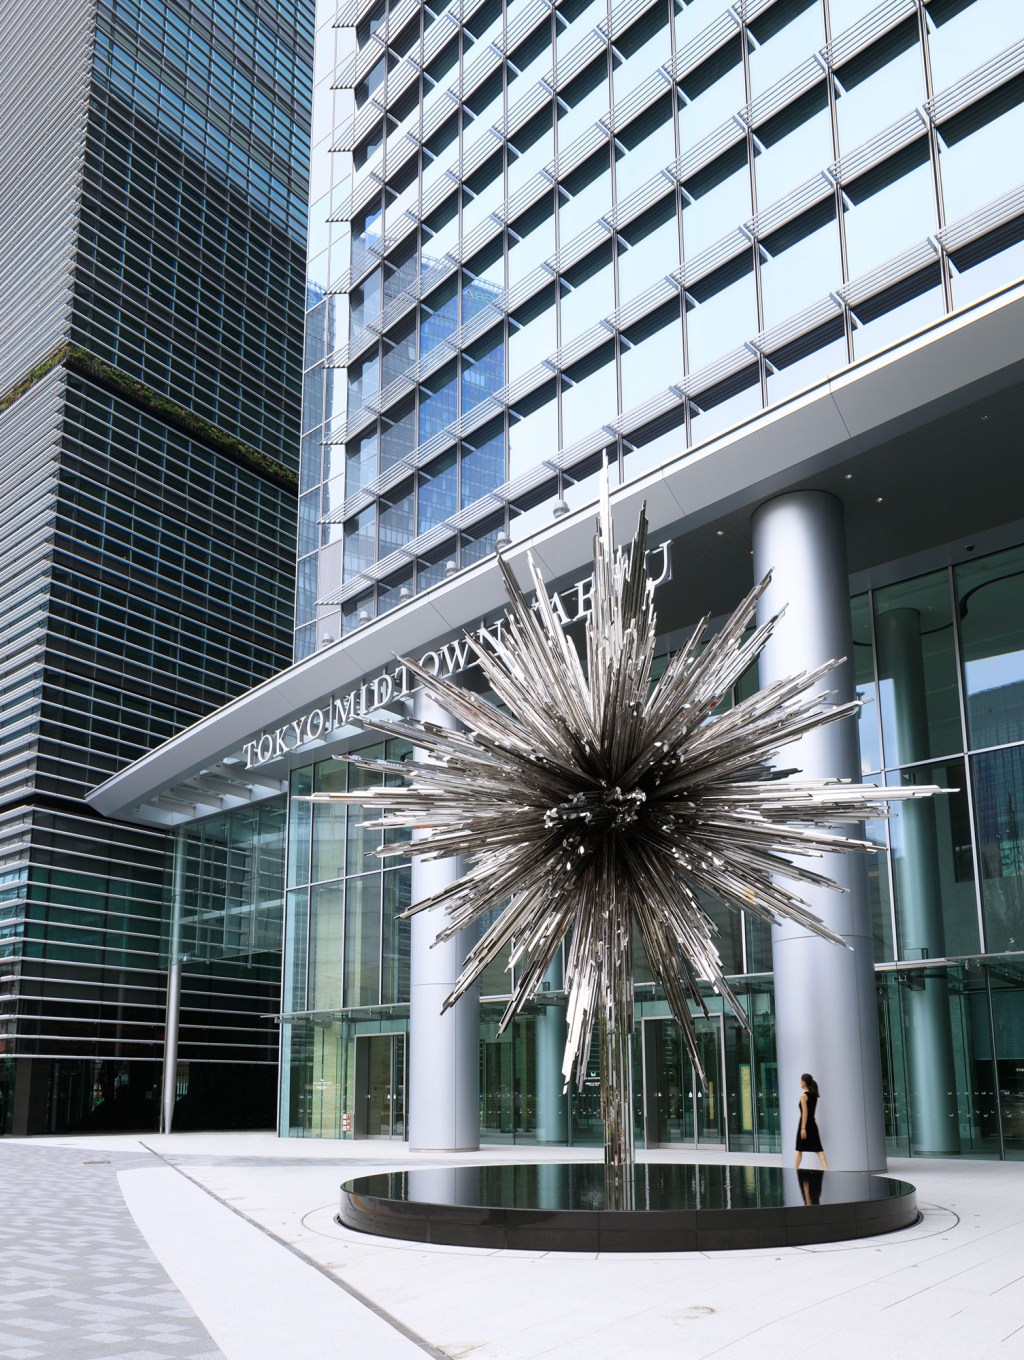 A escultura espelhada 'Estrela' (Star) de Tokujin Yoshioka na entrada do Tokyo Midtown Yaesu, em Tóquio.